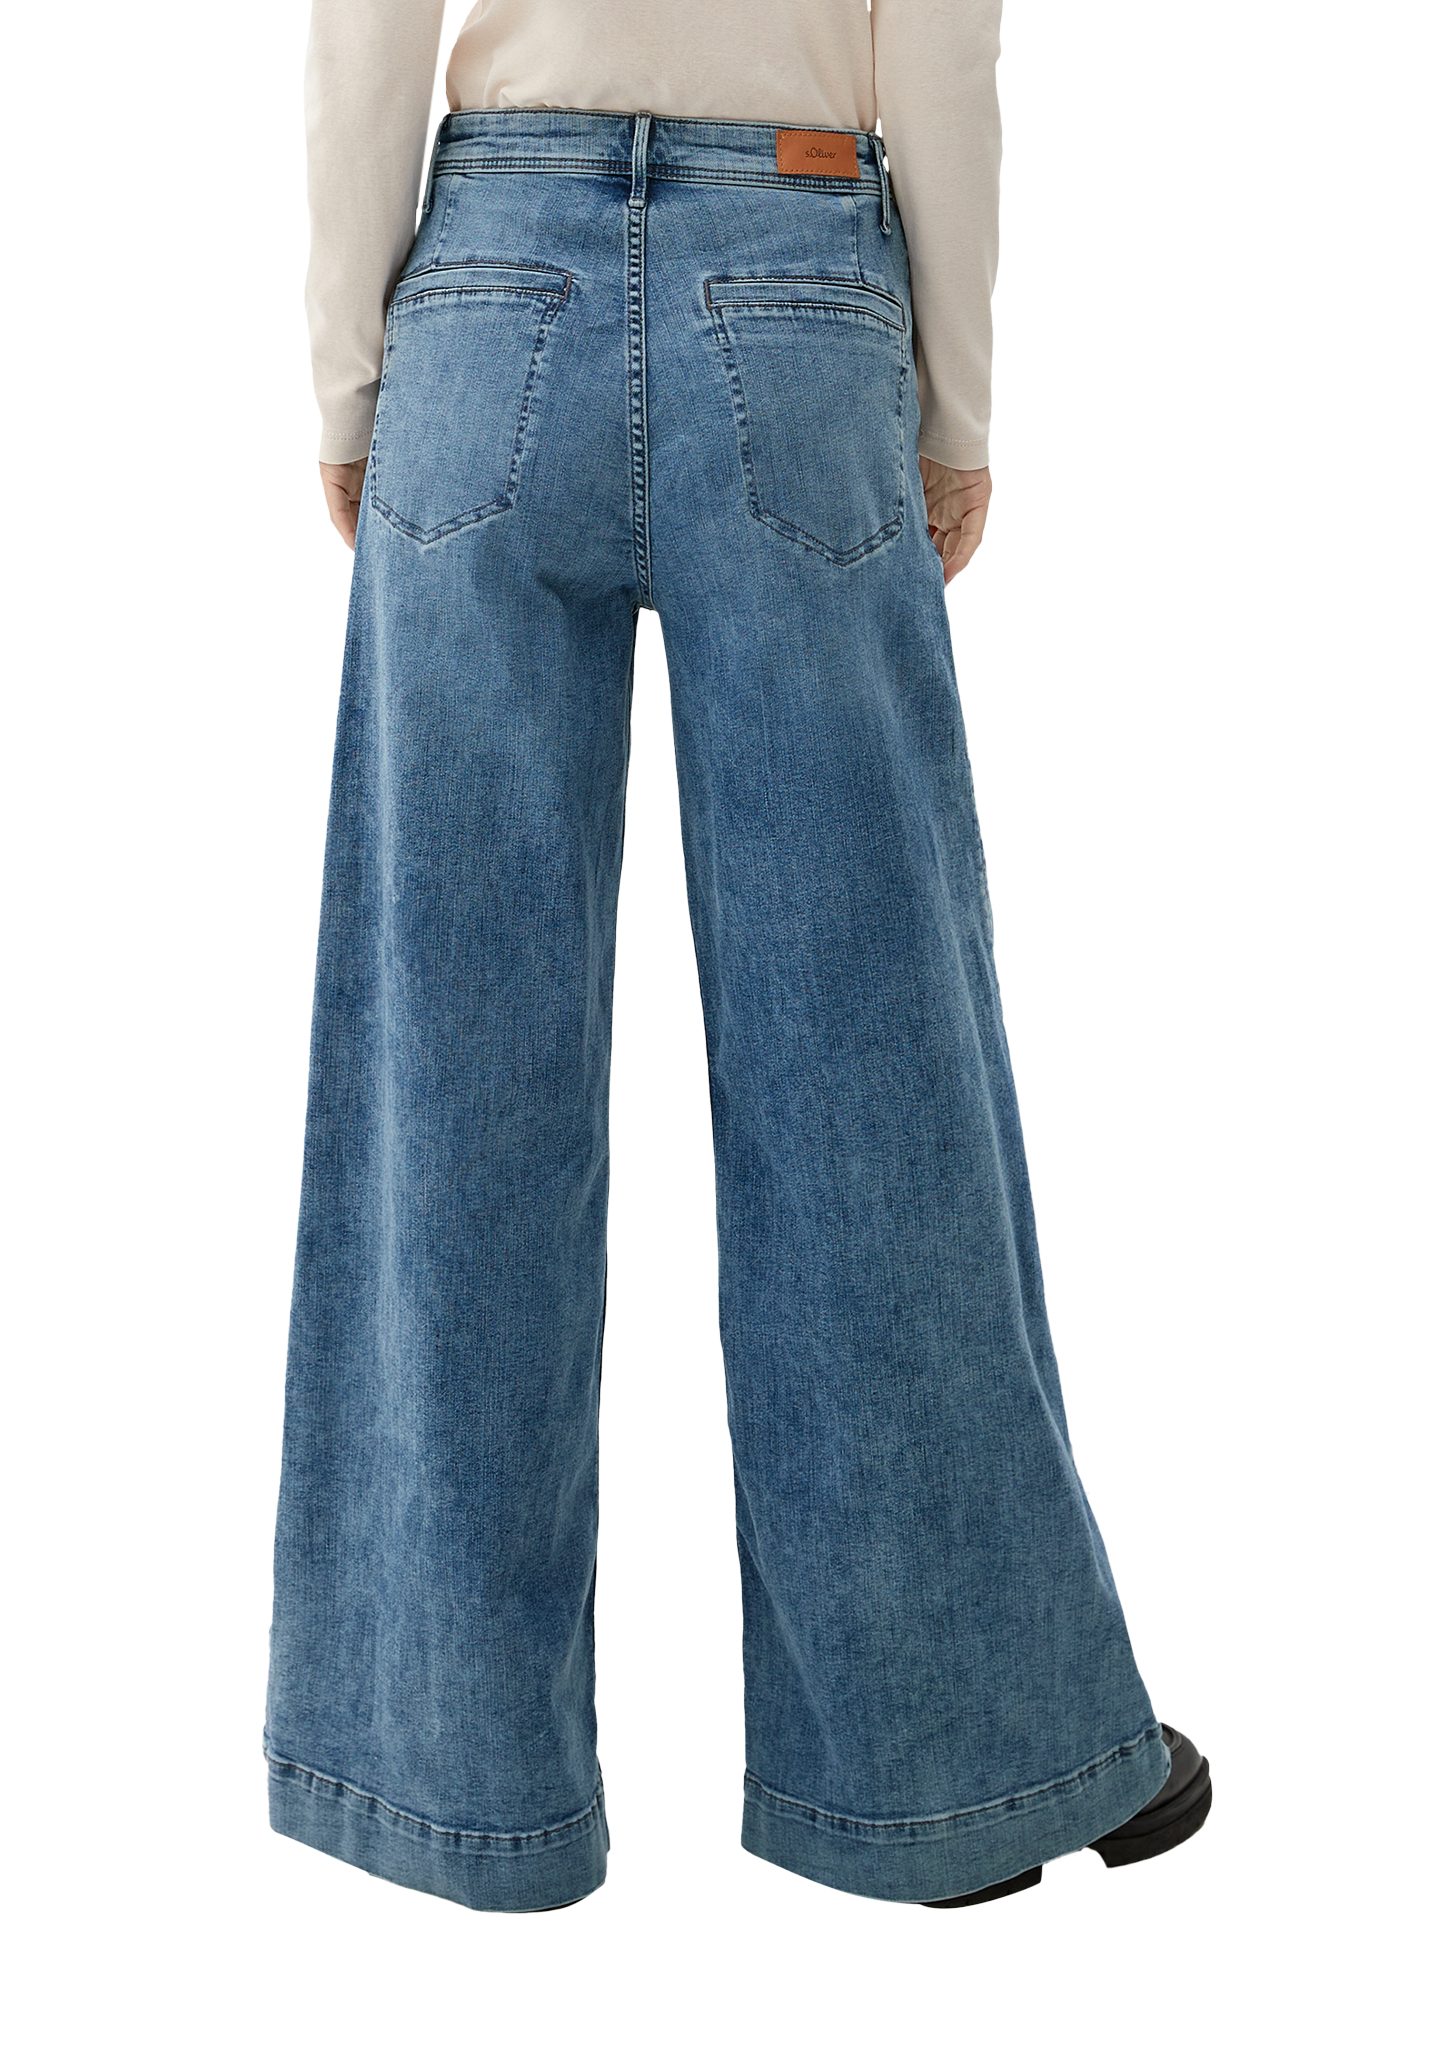 Wide Fit Rise Jeans / hellblau / High s.Oliver Waschung / Regular Suri 5-Pocket-Jeans Leg